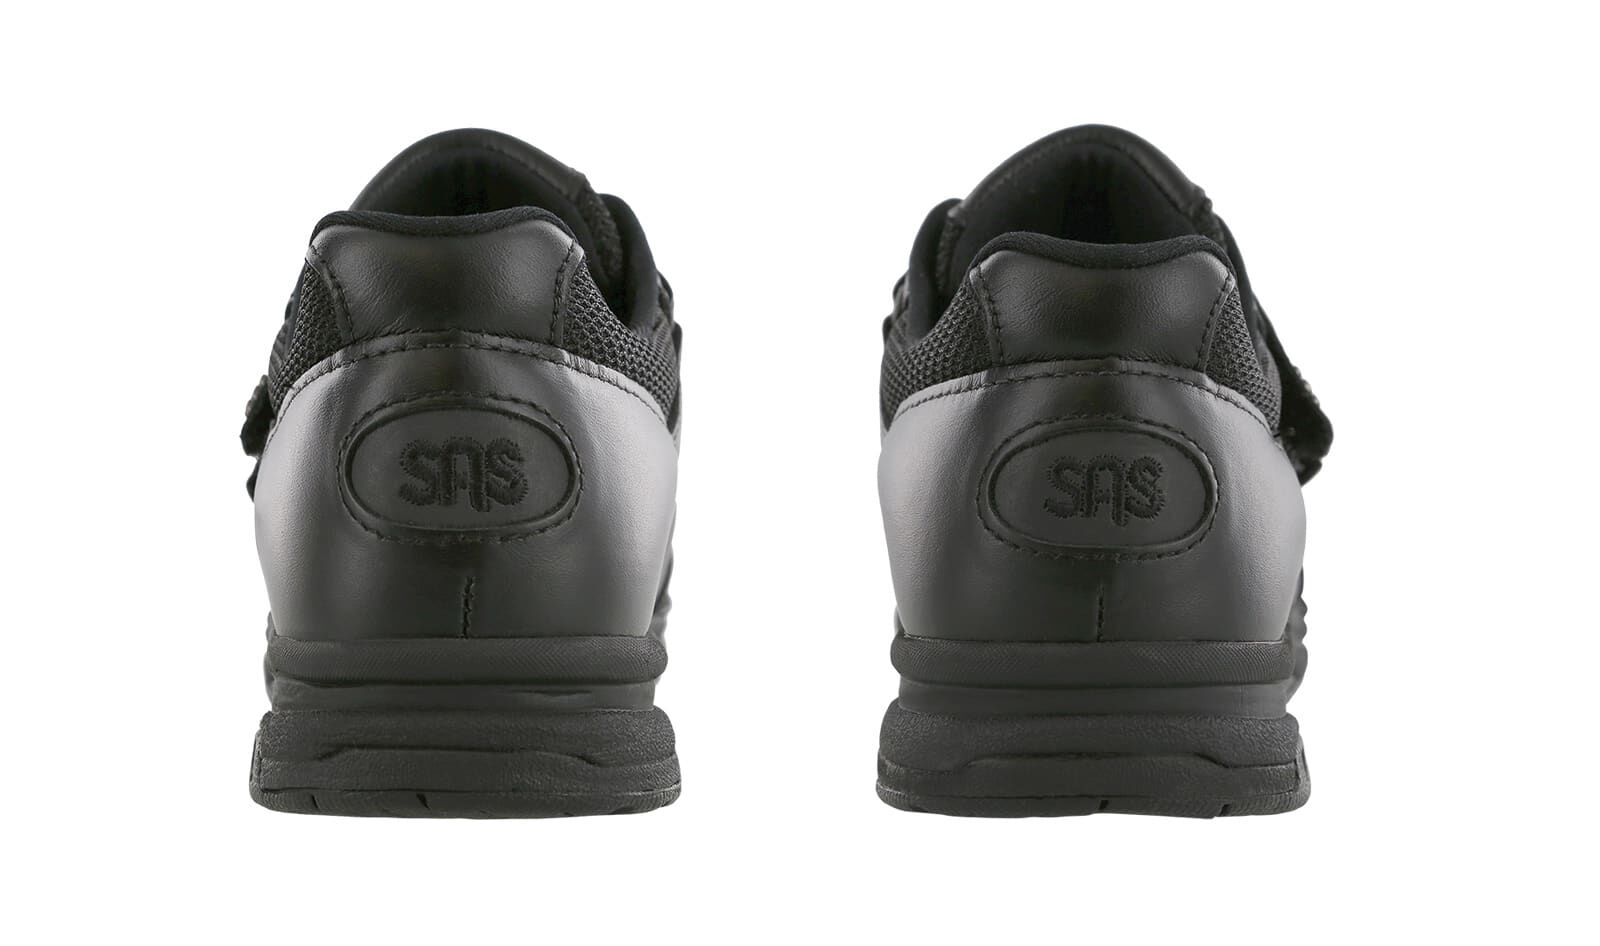 TEMPO WHITE SILVER — SAS Shoes